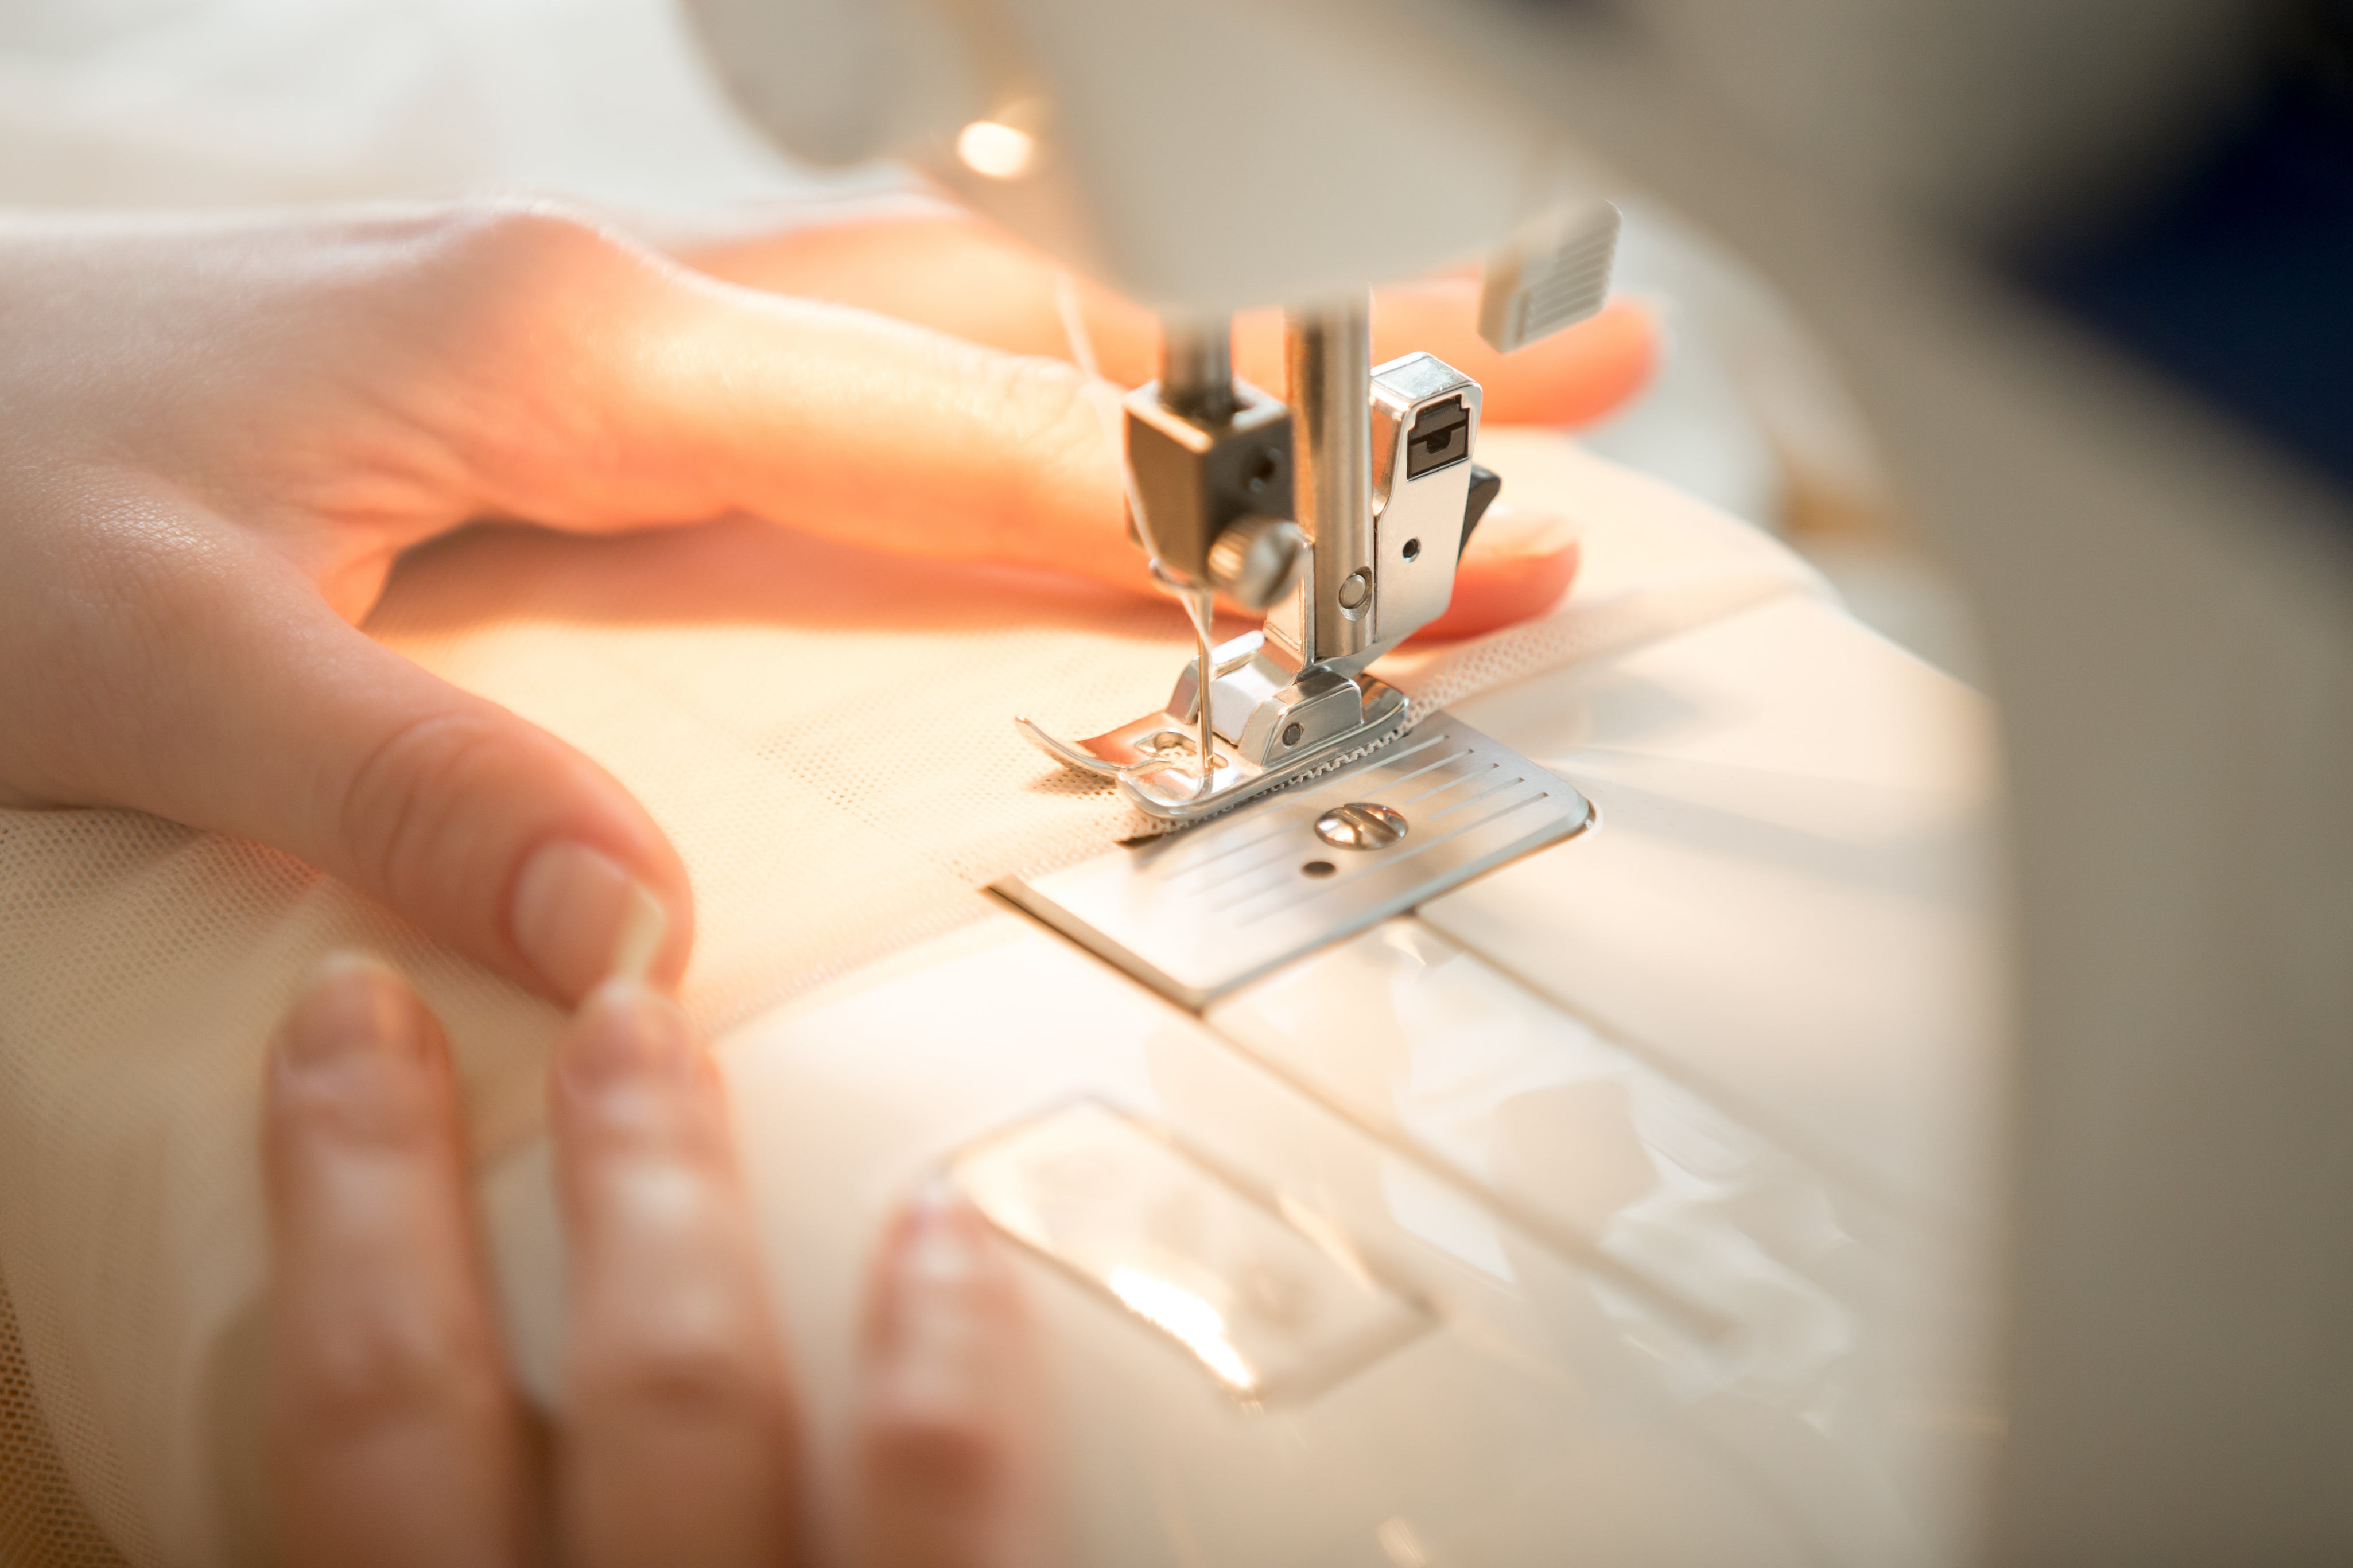 hands-sewing-machine.jpg